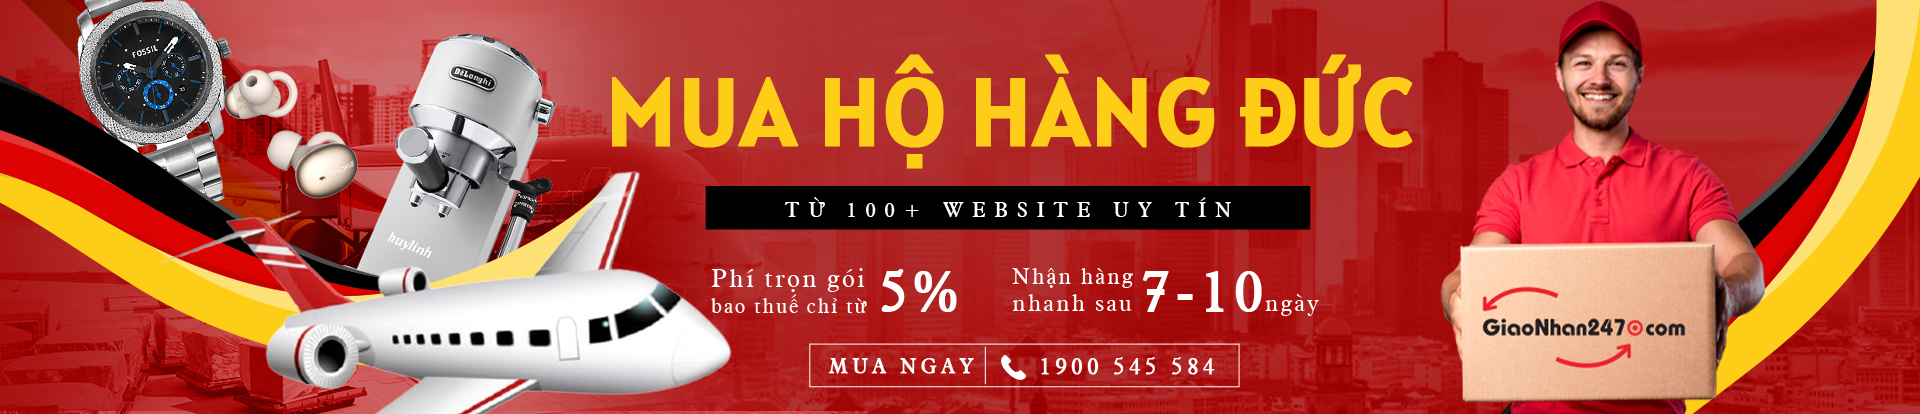 mua-ho-hang-duc-tren-website-uy-tin